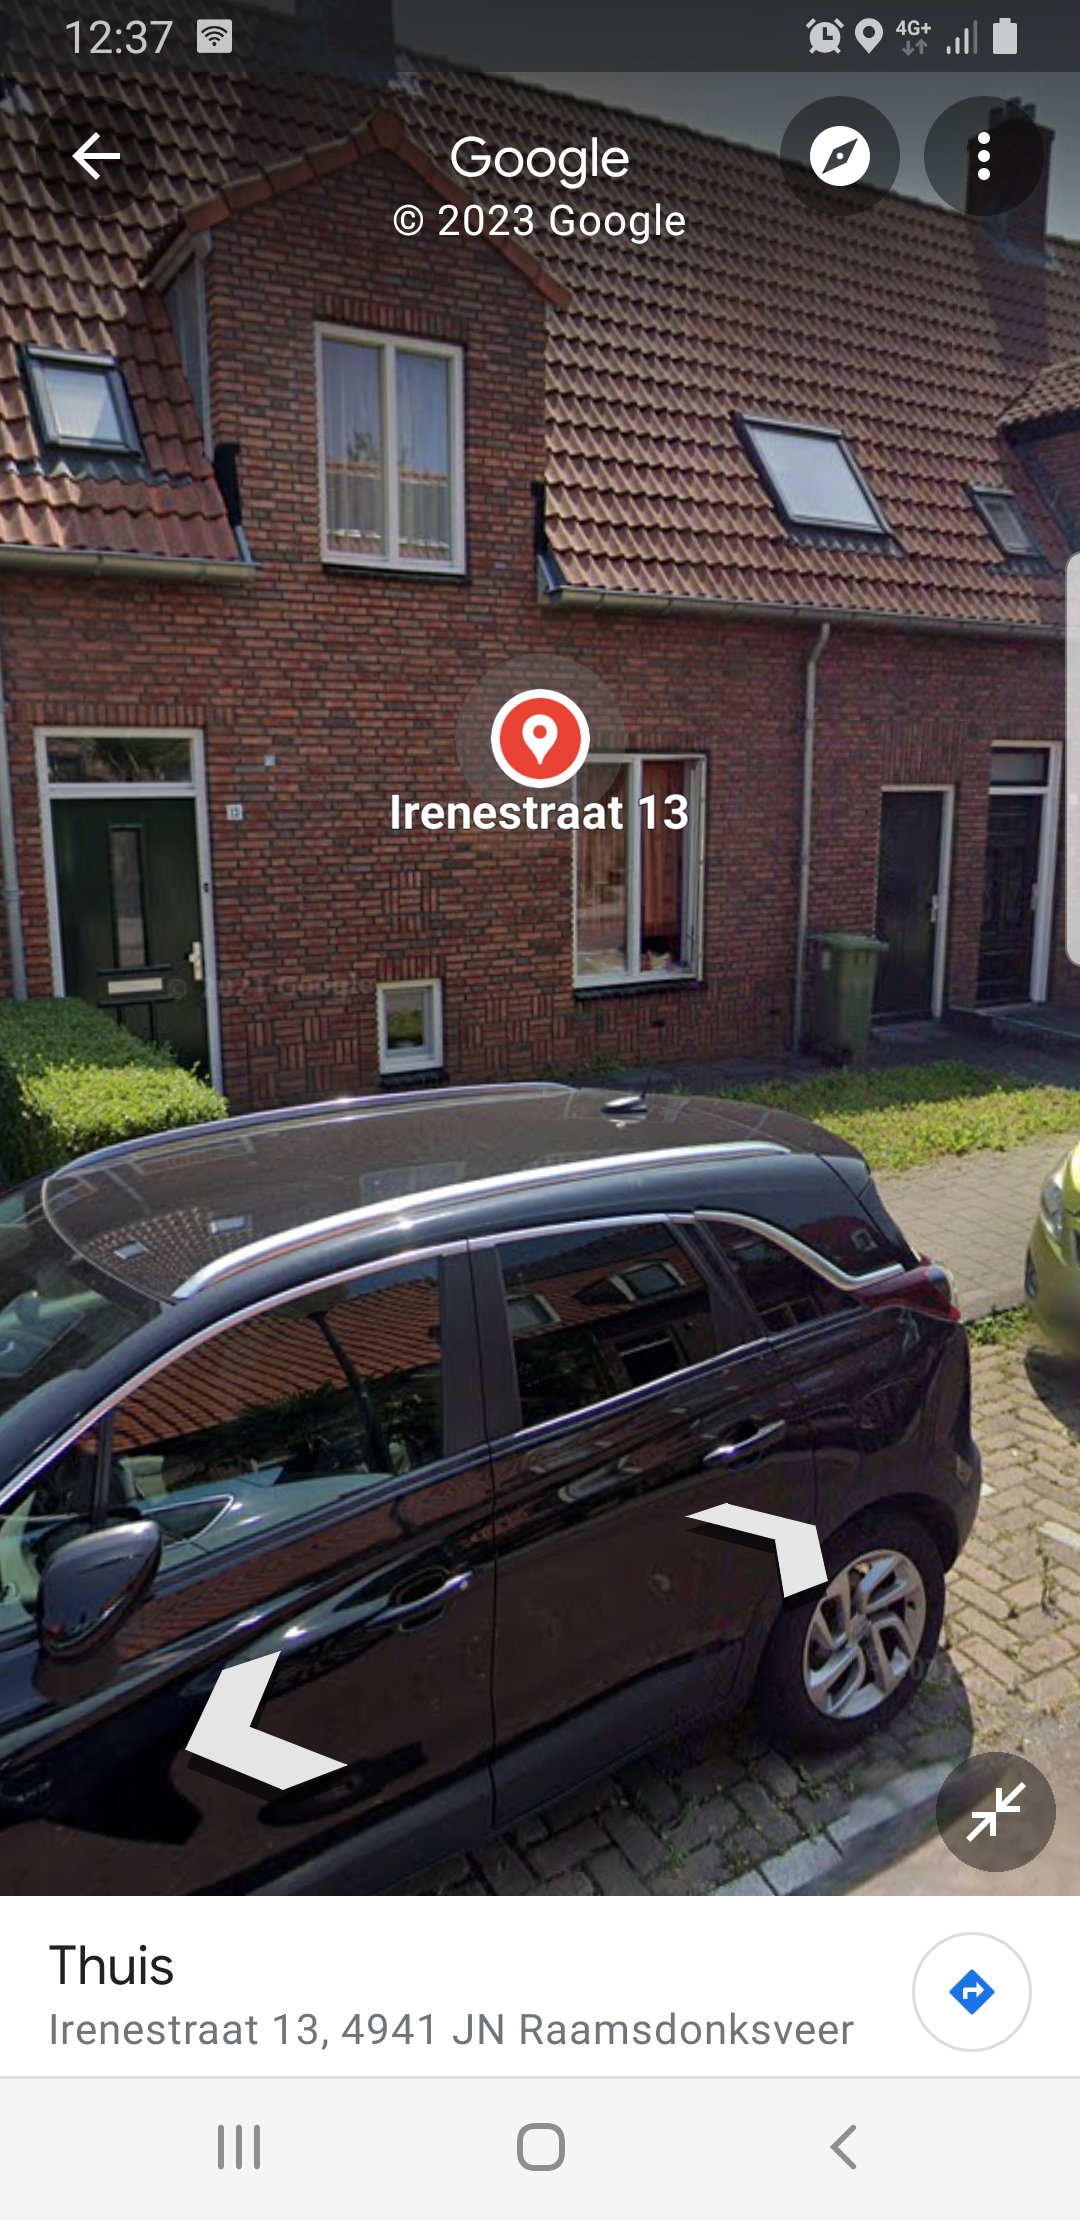 Irenestraat 13, 4941 JN Raamsdonksveer, Nederland